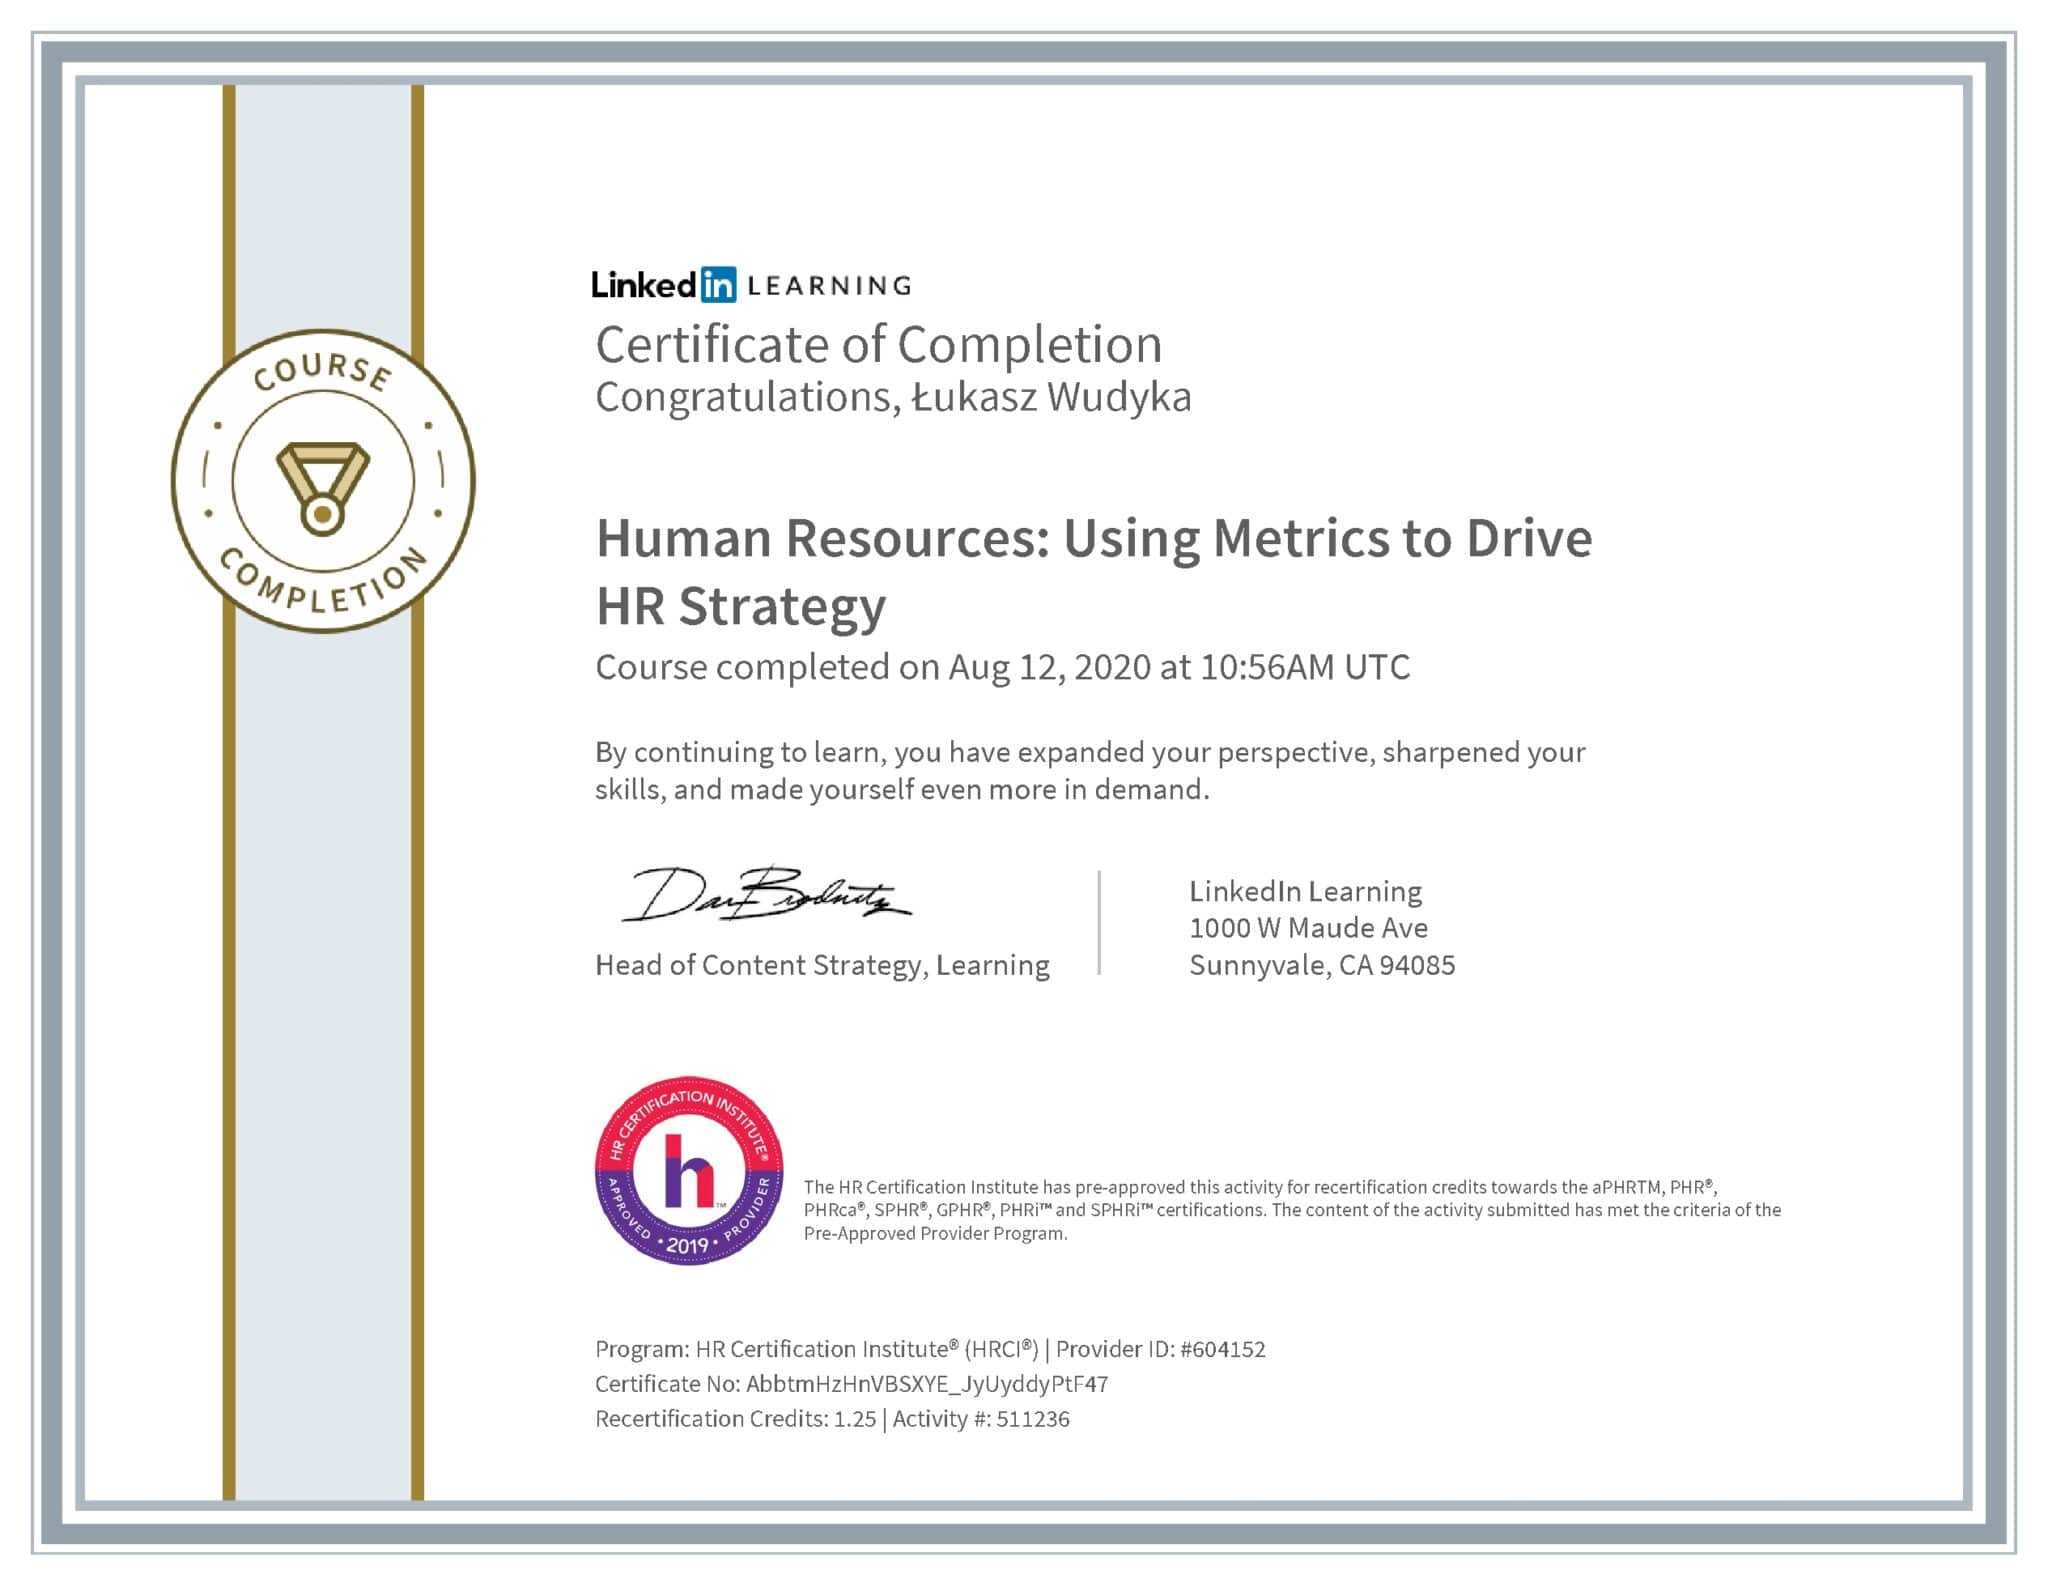 Łukasz Wudyka certyfikat LinkedIn Human Resources: Using Metrics to Drive HR Strategy HRCI